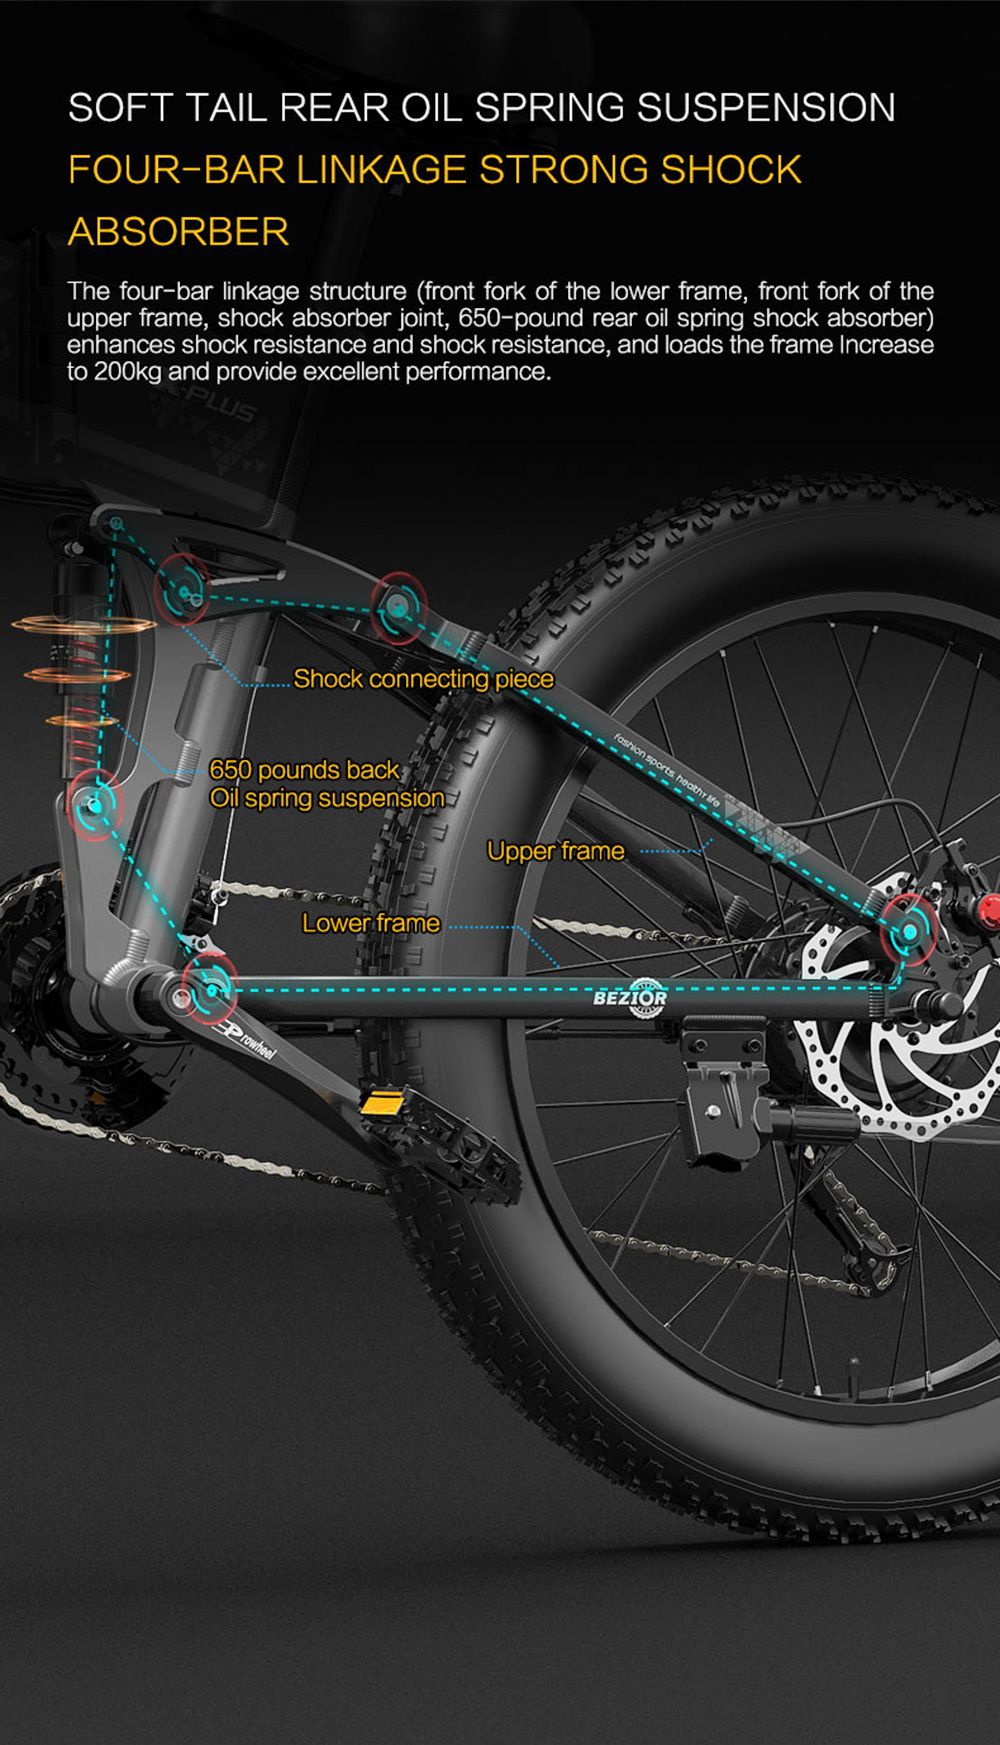 Bicicletă electrică BEZIOR X-PLUS 26in 1500W 40KM/H 48V 17.5Ah Baterie Albastru